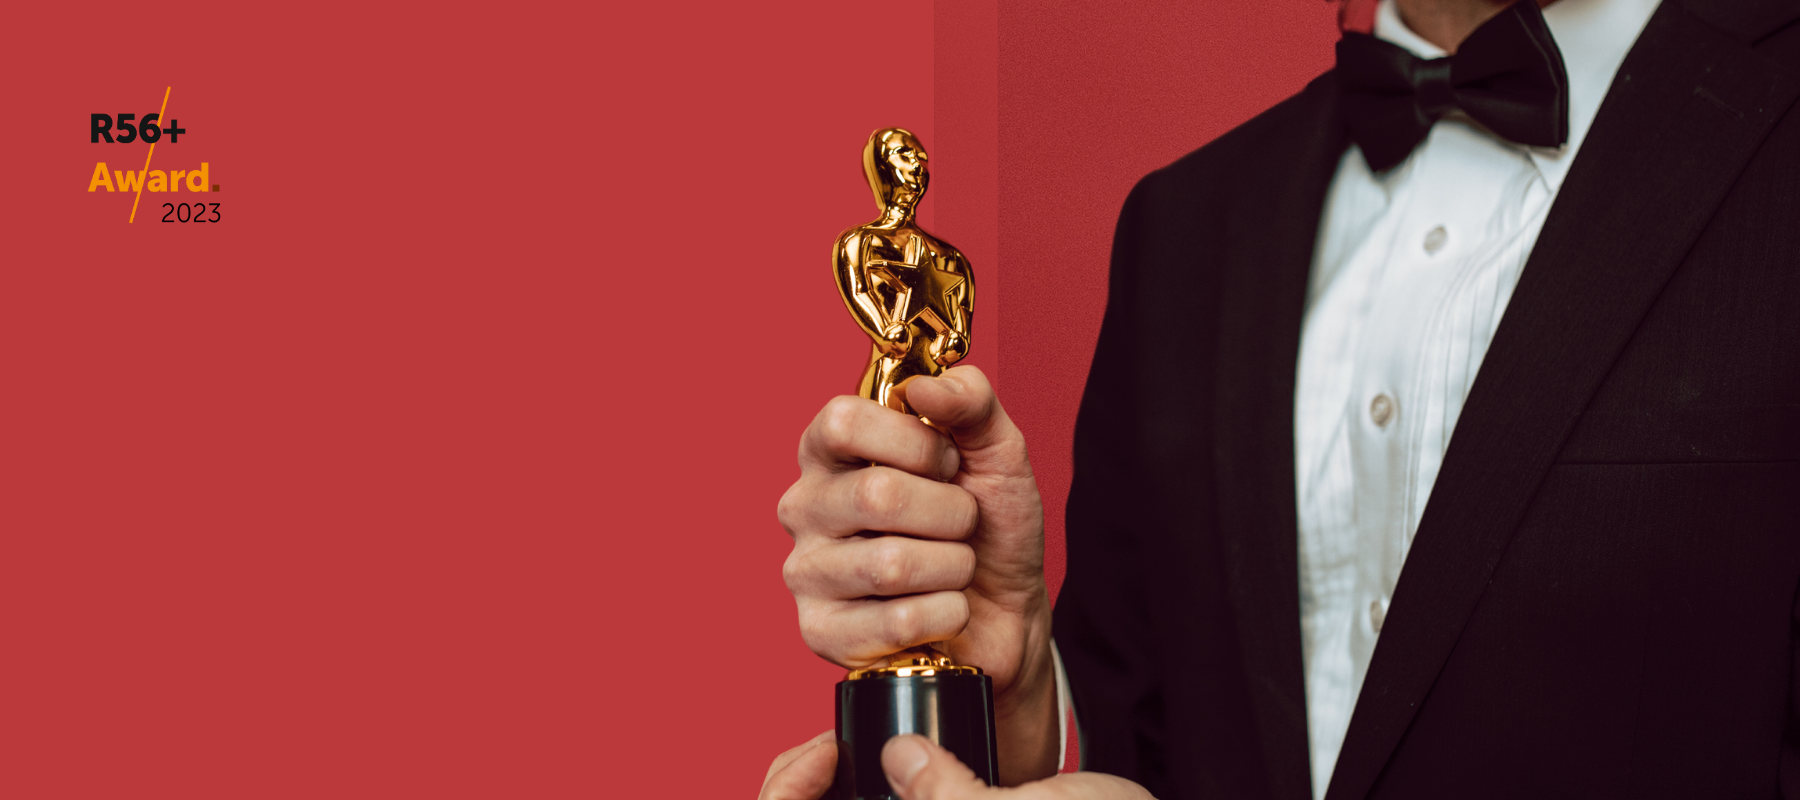 Das Logo des R56+ Award auf einem roten Hintergrund mit einem Mann im Smoking mit einem Award in der Hand.